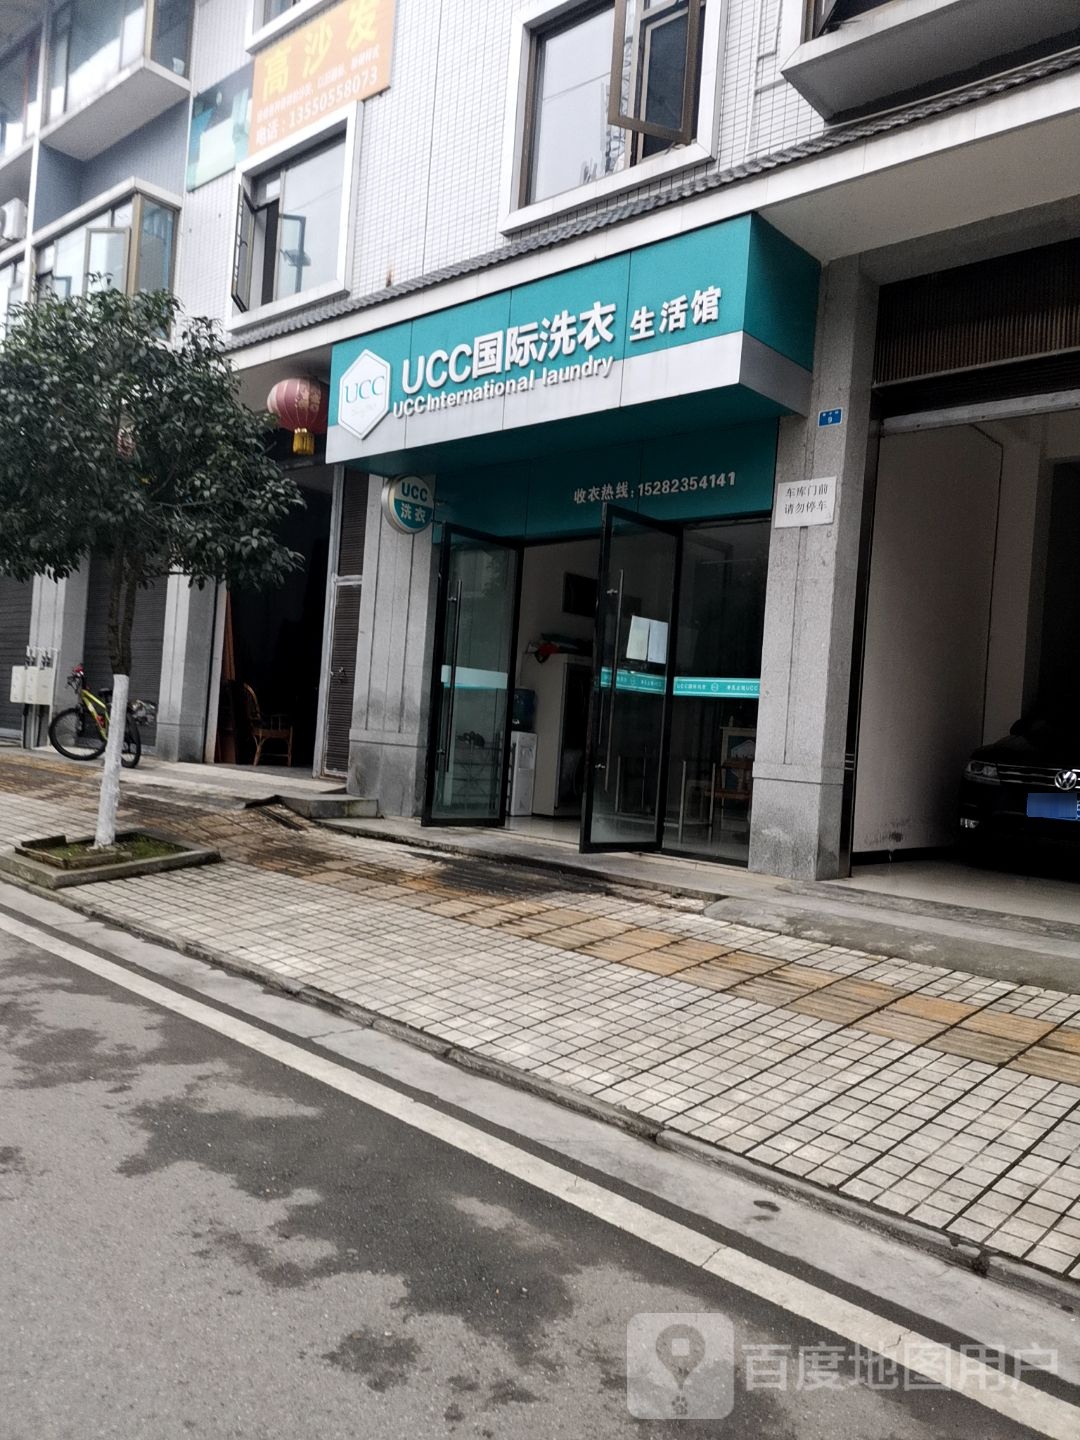 UCC国际洗衣生活馆(外男街店)